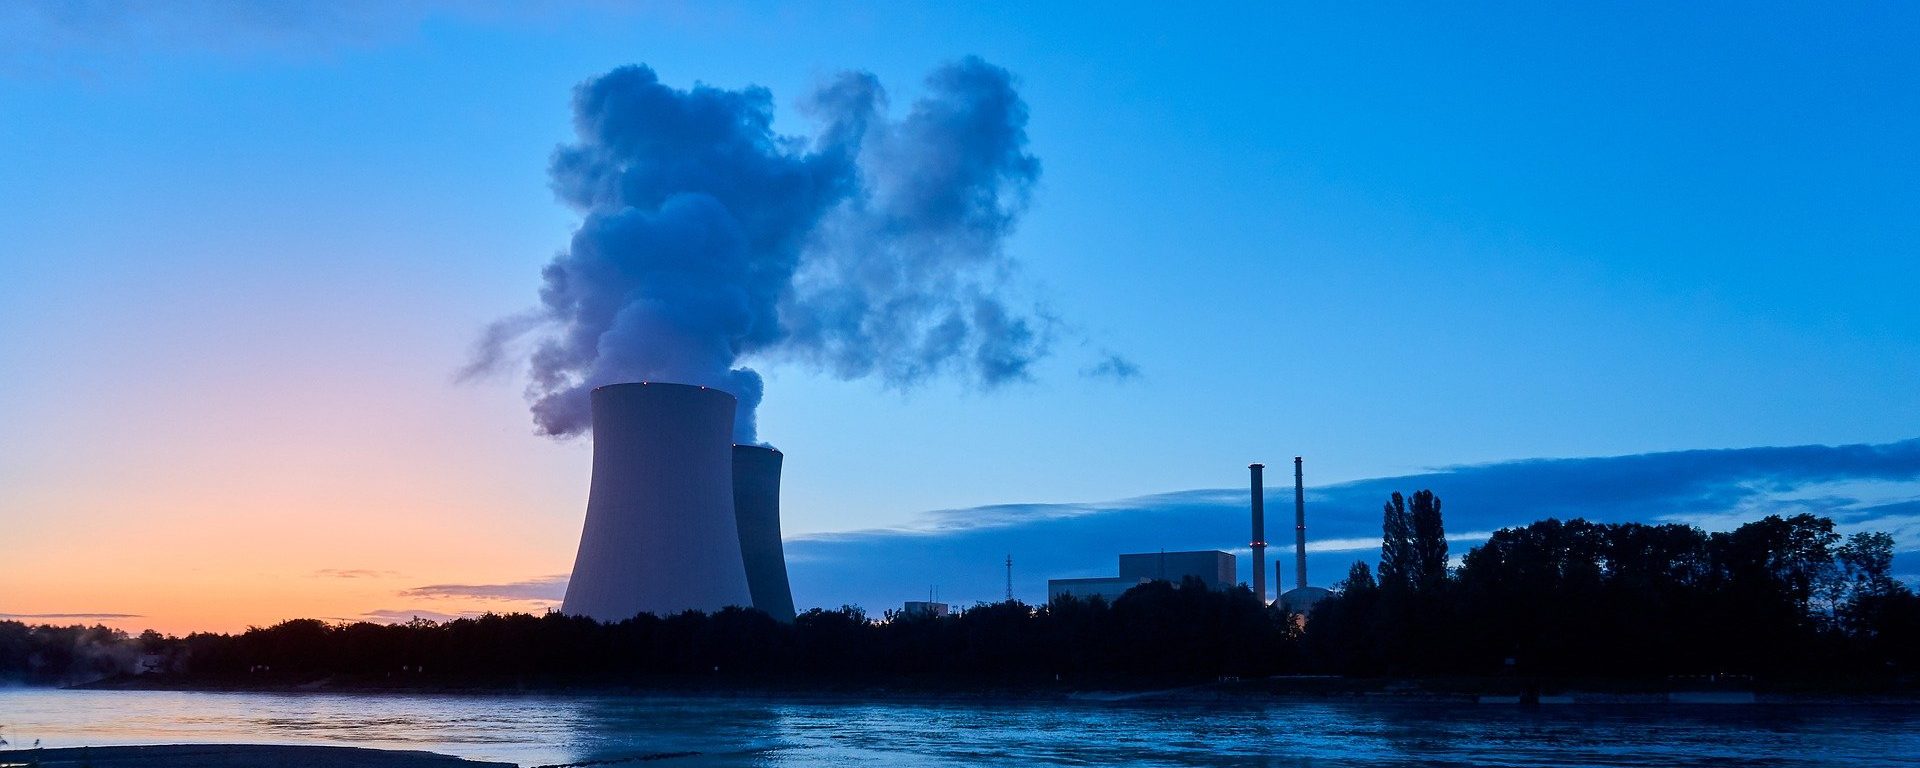 Indien will stark steigenden Energiebedarf mit Atomkraft bedienen